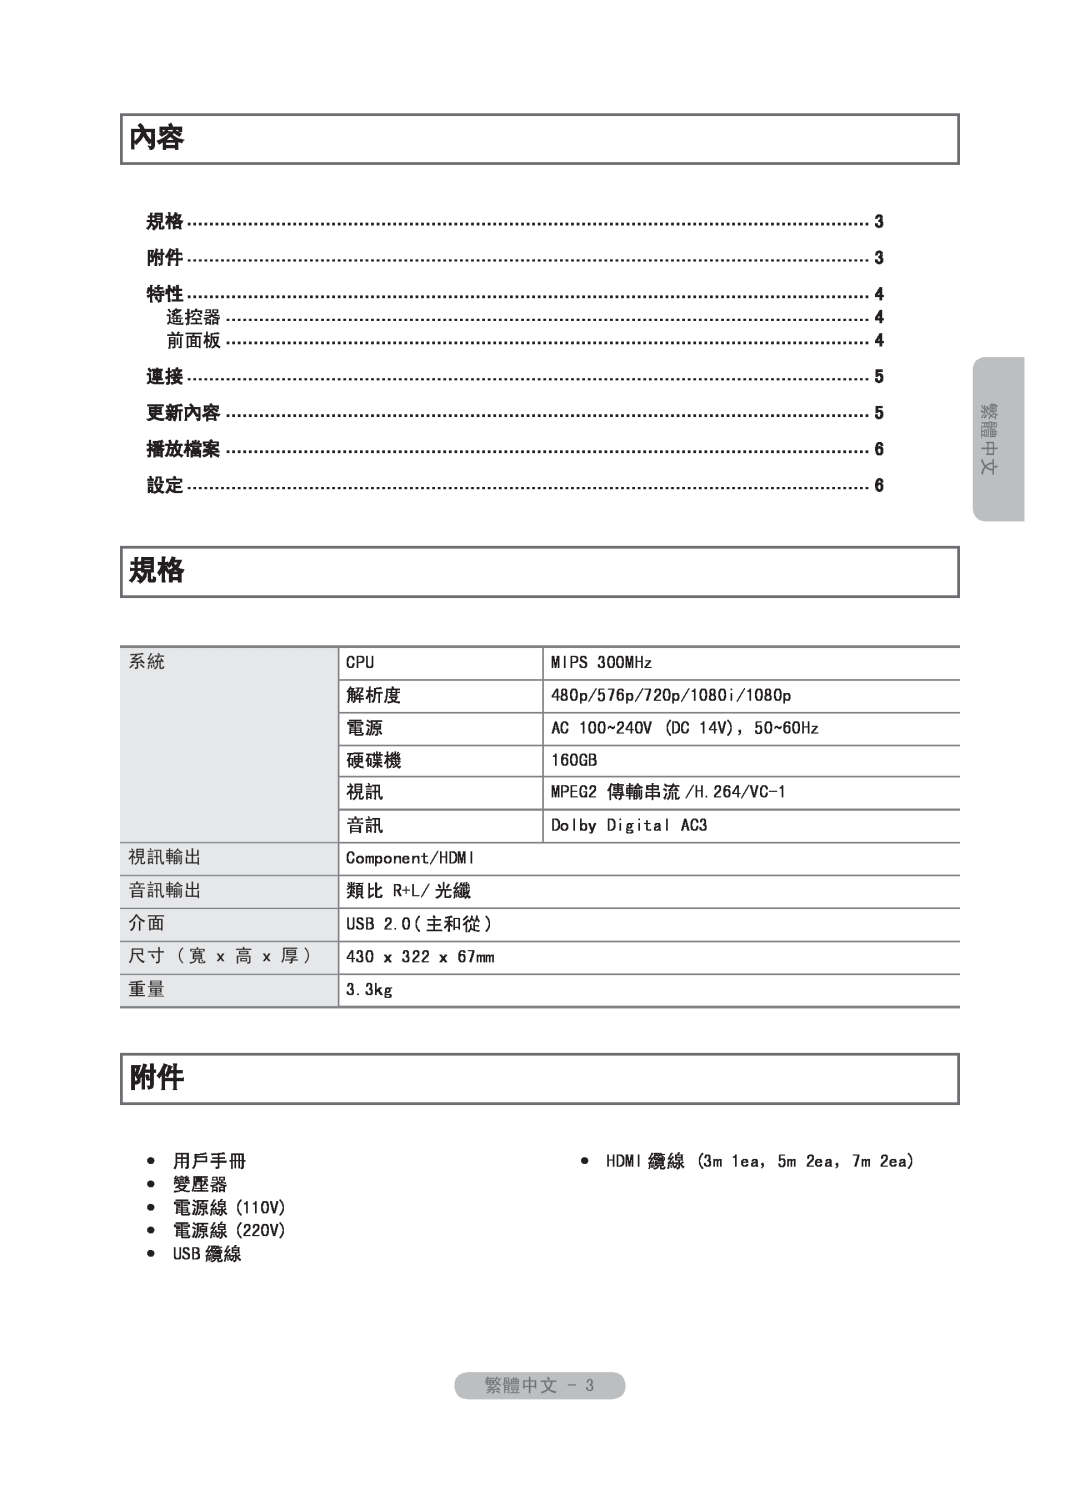 Samsung MR-16SB2 manual 繁體中文, HDMI 纜線 3m 1ea ，5m 2ea ，7m 2ea 